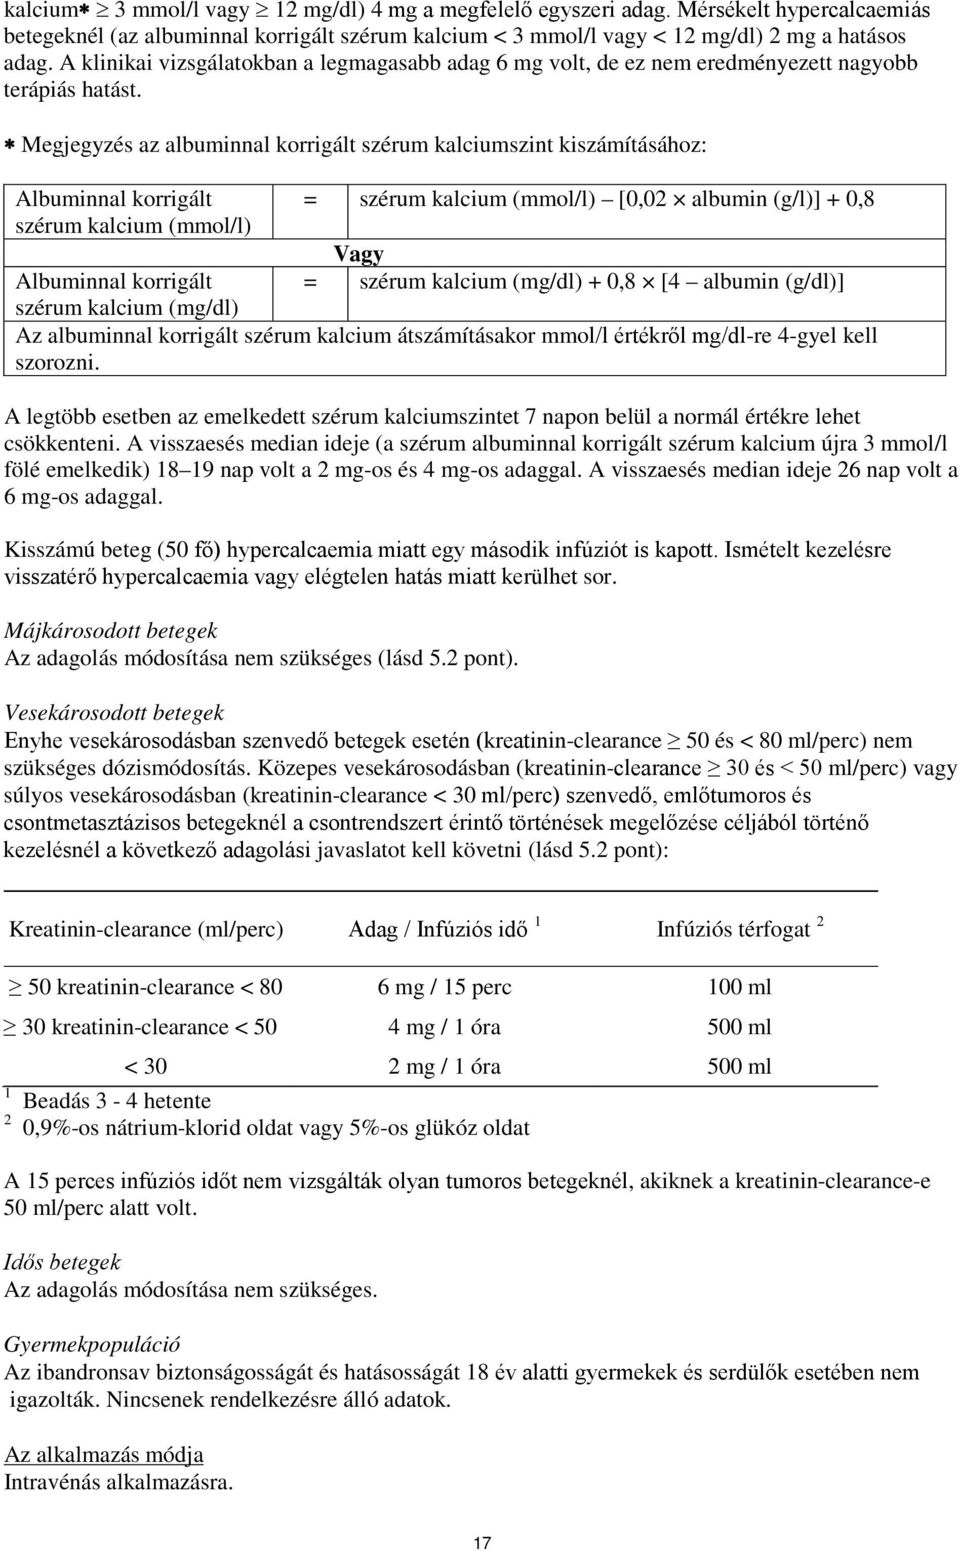 Megjegyzés az albuminnal korrigált szérum kalciumszint kiszámításához: Albuminnal korrigált szérum kalcium (mmol/l) = szérum kalcium (mmol/l) [0,02 albumin (g/l)] + 0,8 Vagy = szérum kalcium (mg/dl)